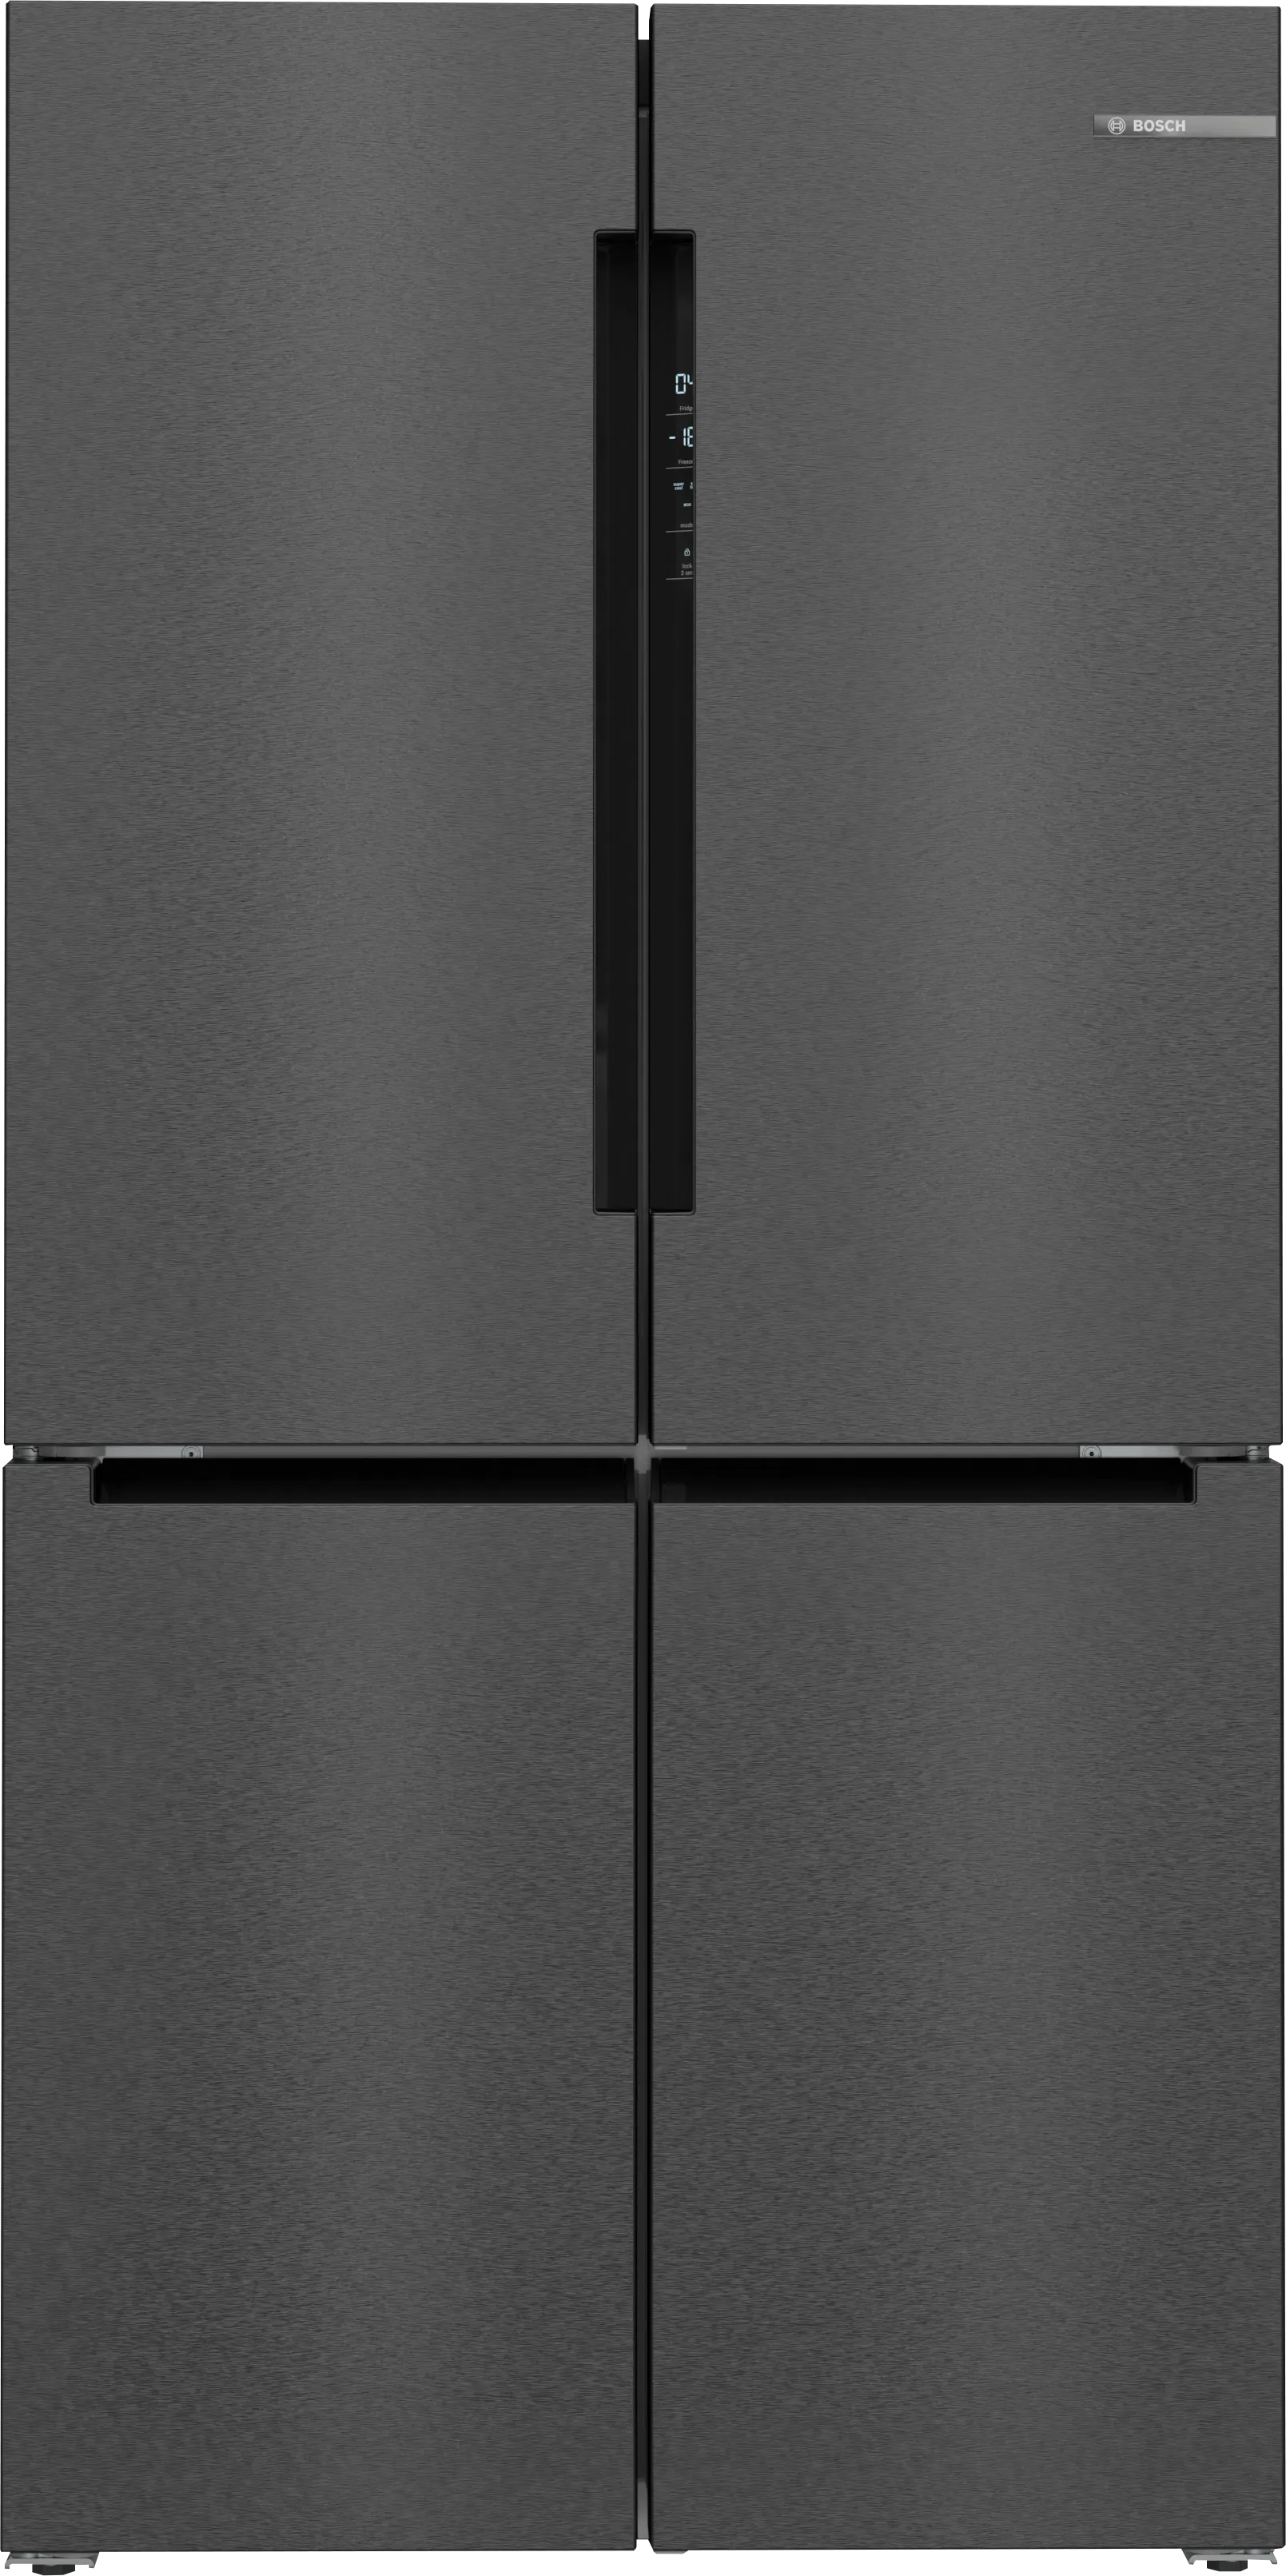 Series 4 multi door French Door Bottom Freezer 183 x 90.5 cm Black stainless steel 